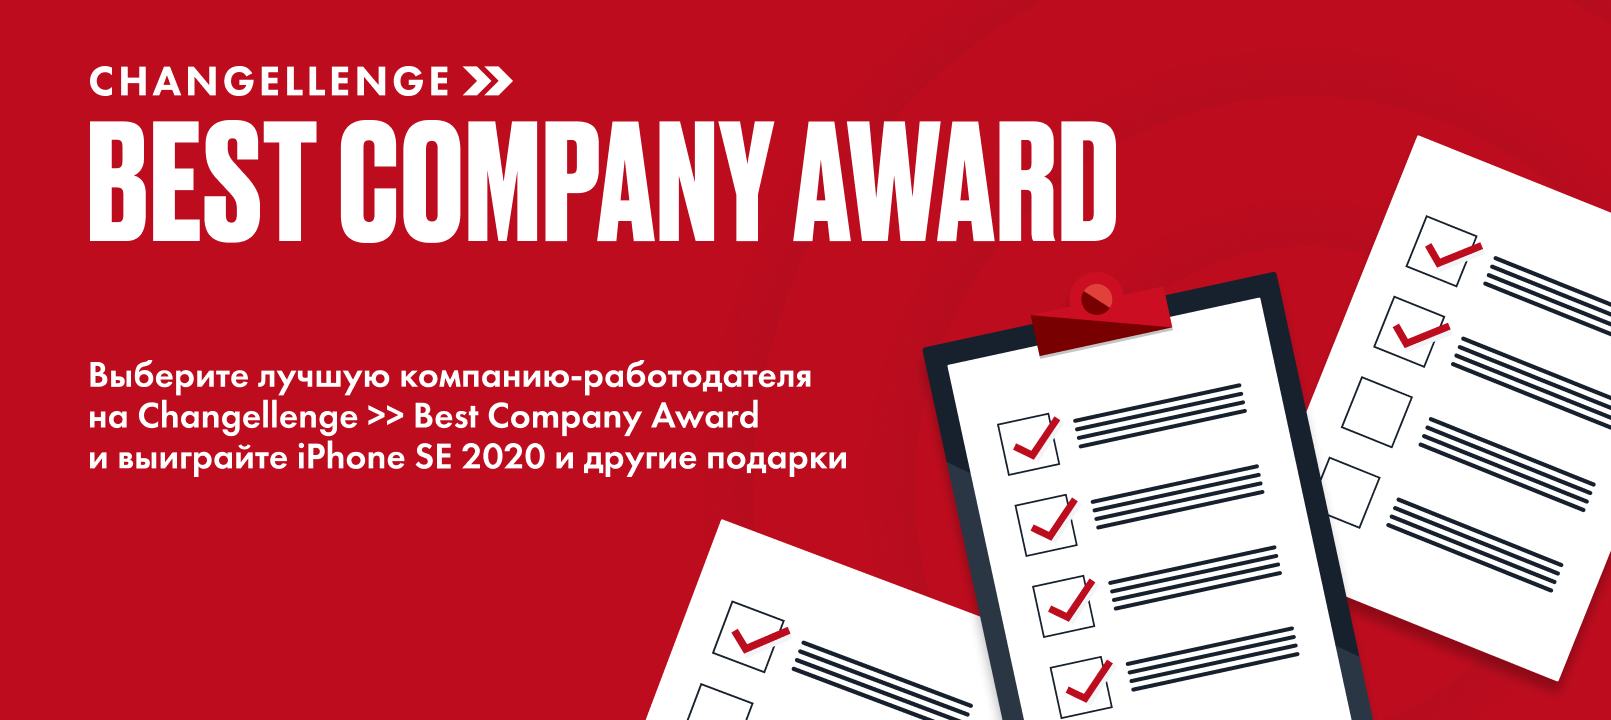 Best Company Award